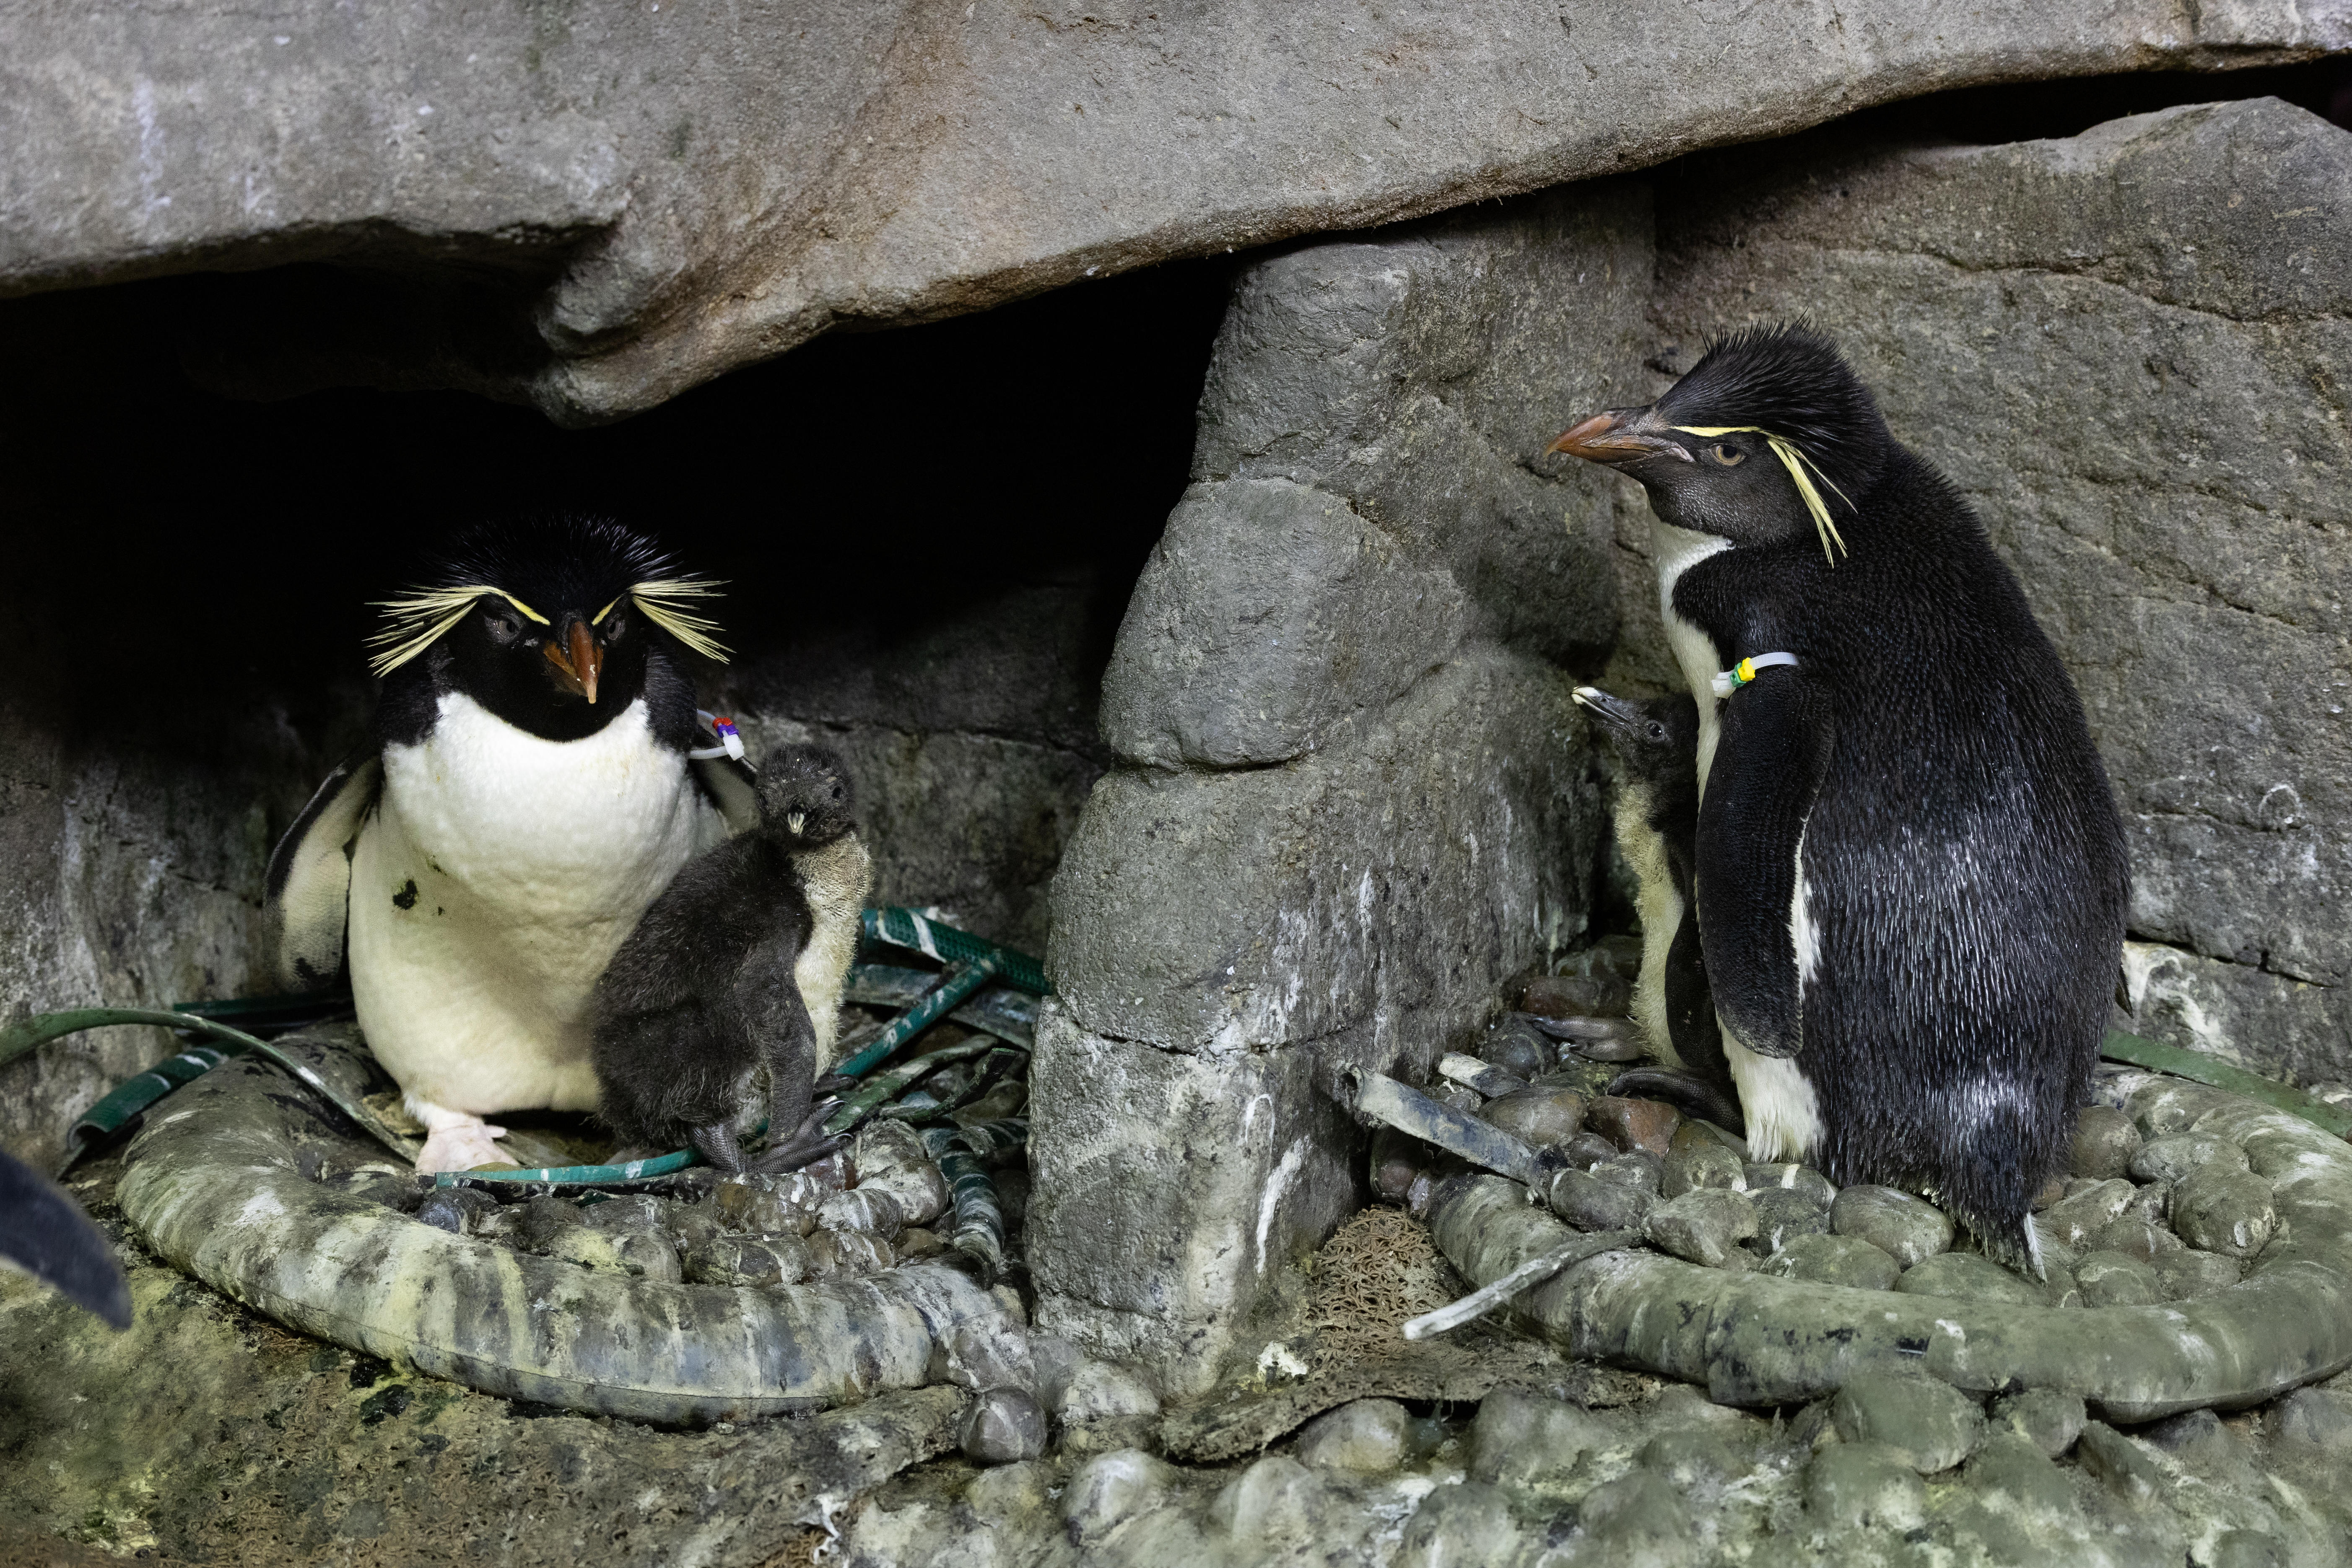 Shedd Aquarium rockhopper penguins 